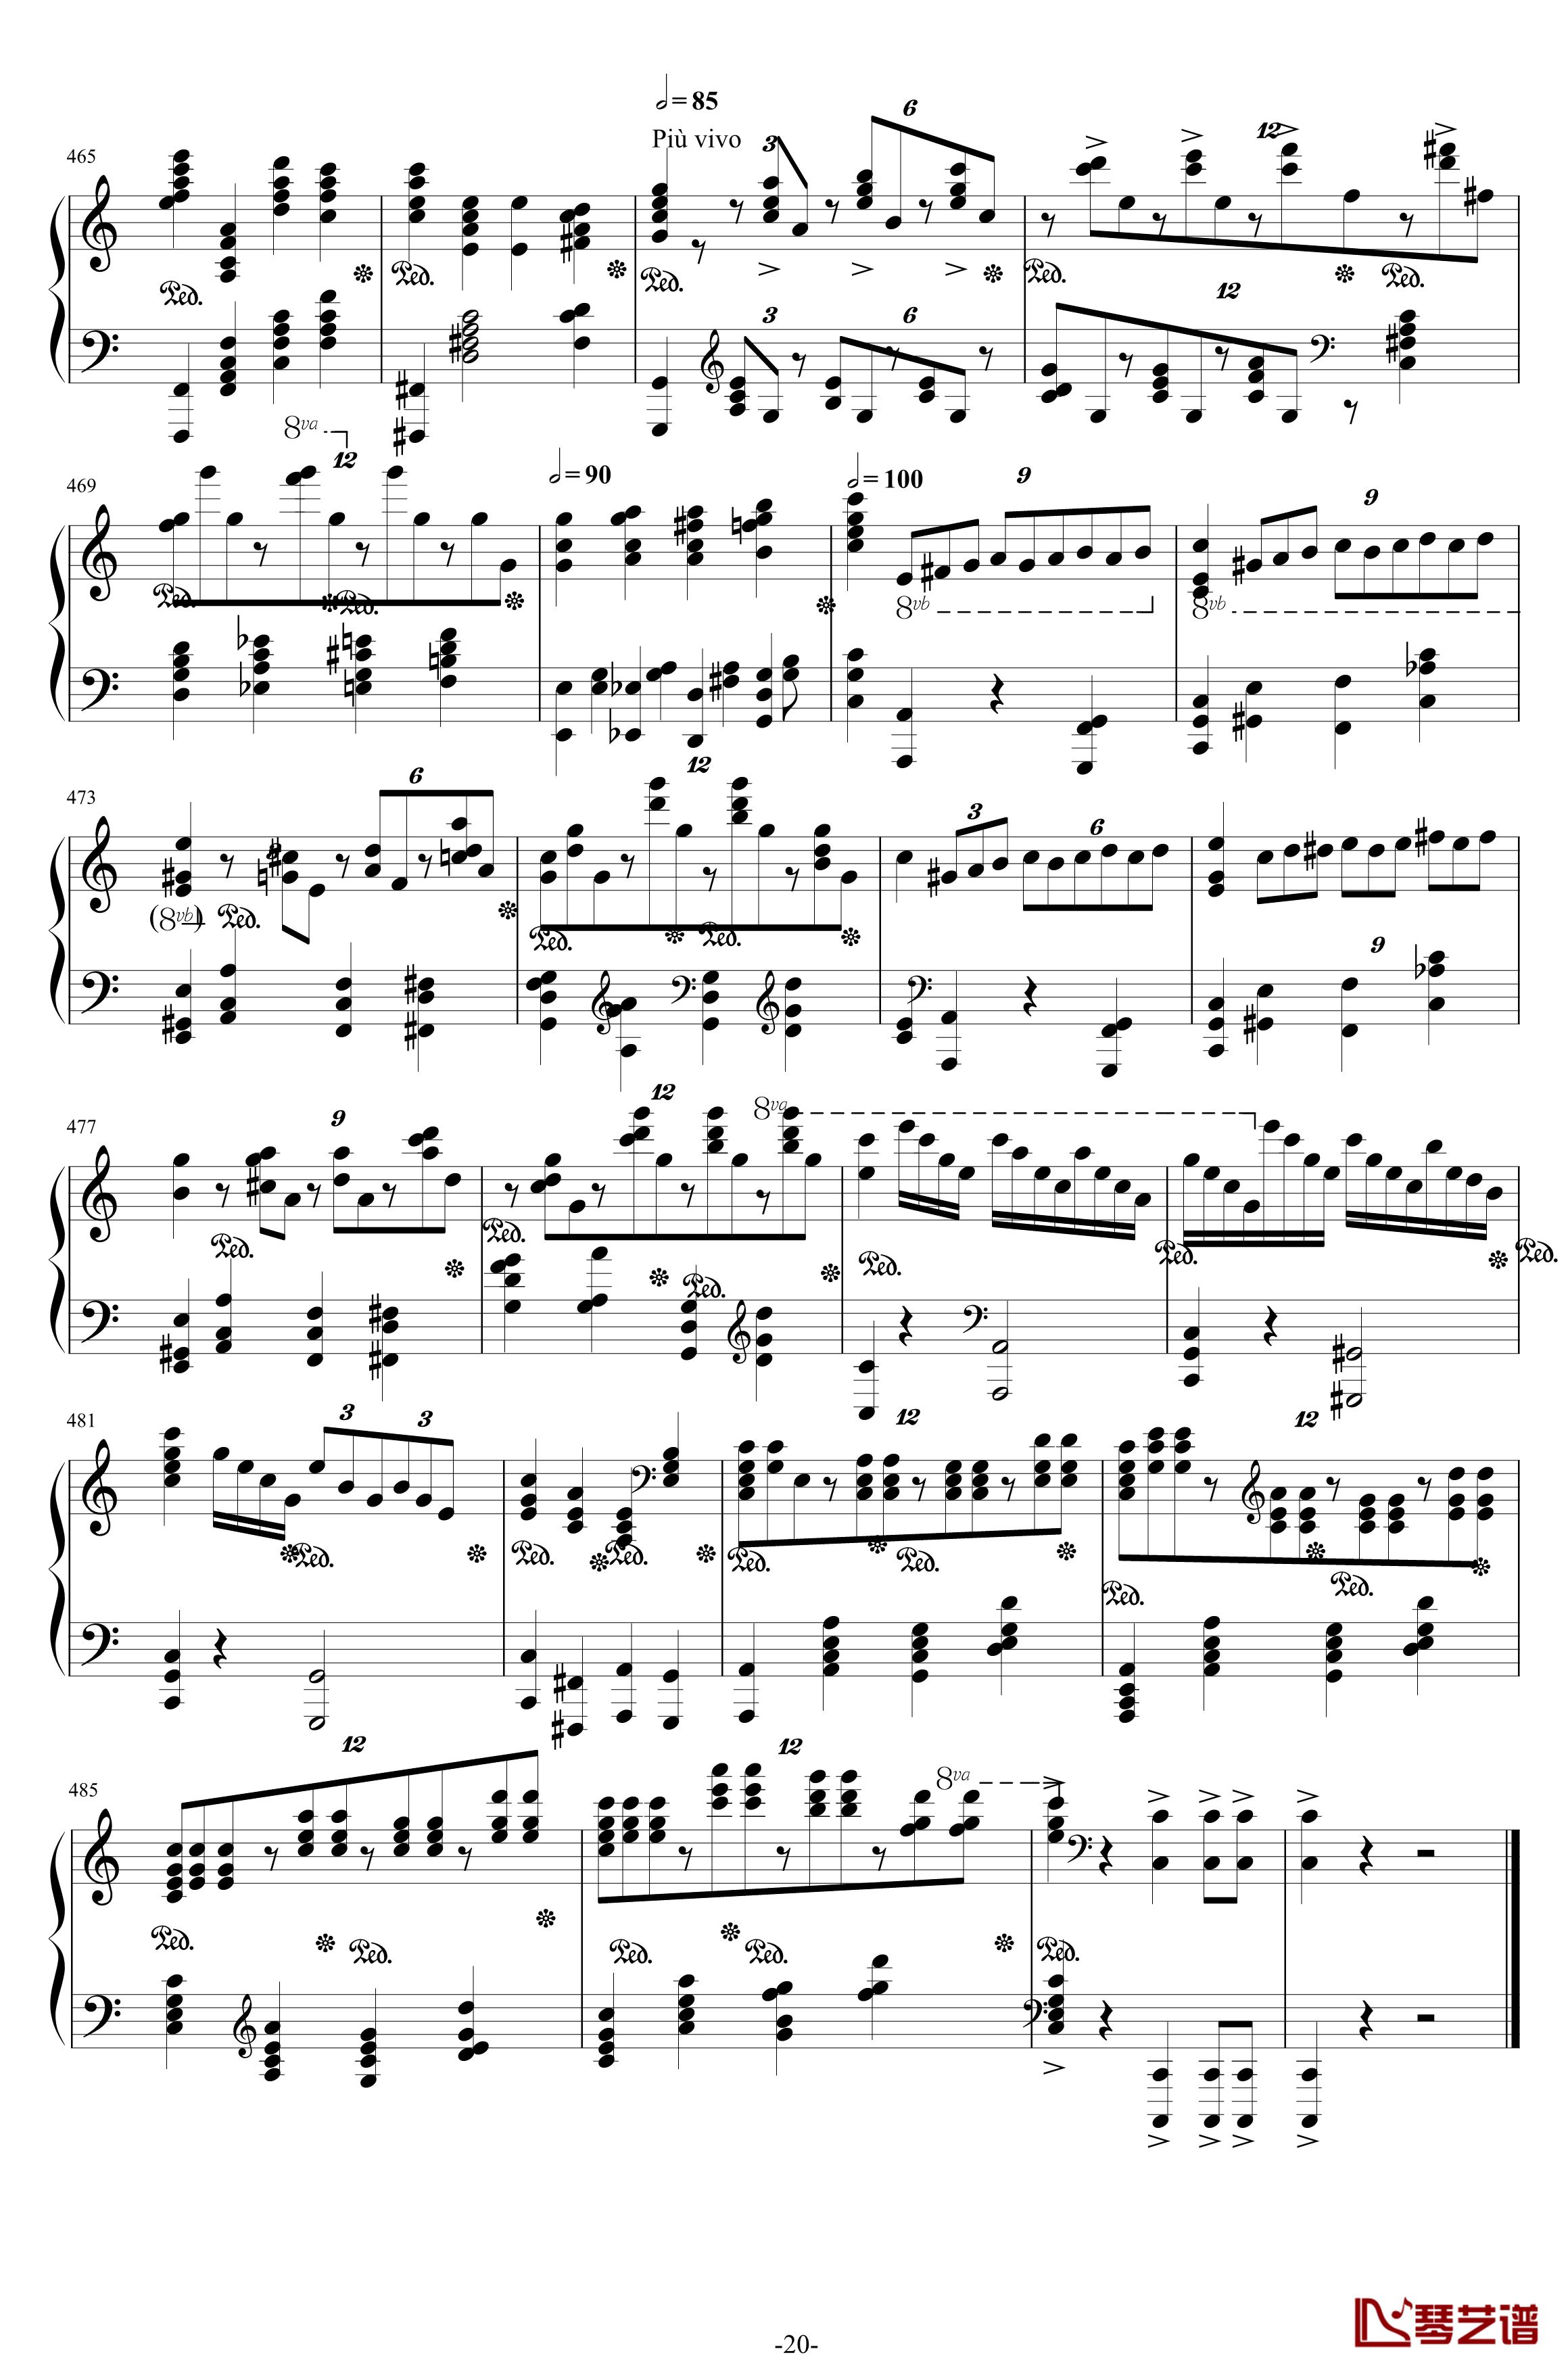 第二钢琴协奏曲钢琴谱-第三乐章独奏版-c小调-拉赫马尼若夫20